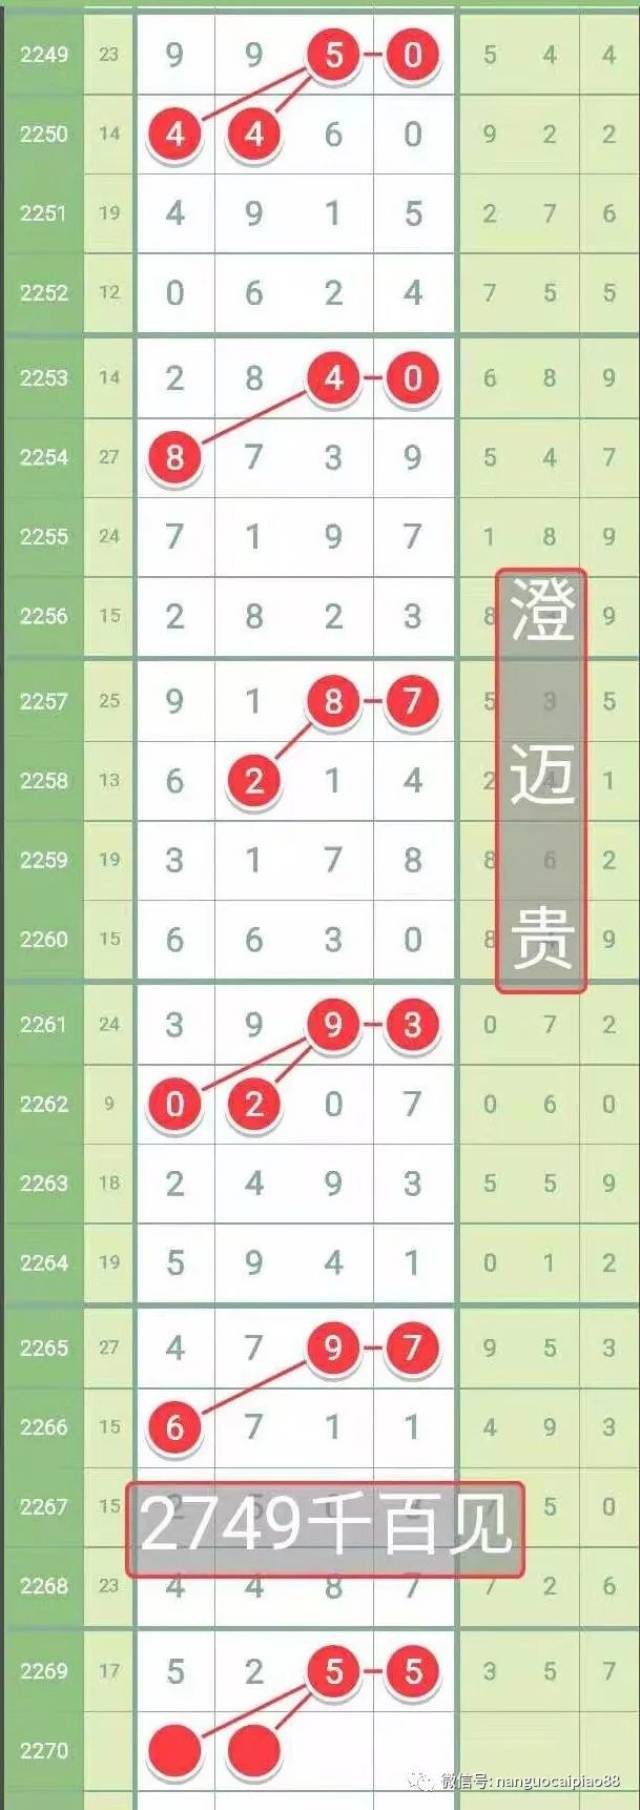 【哆咪奖】第19024期七星彩分析!_手机搜狐网